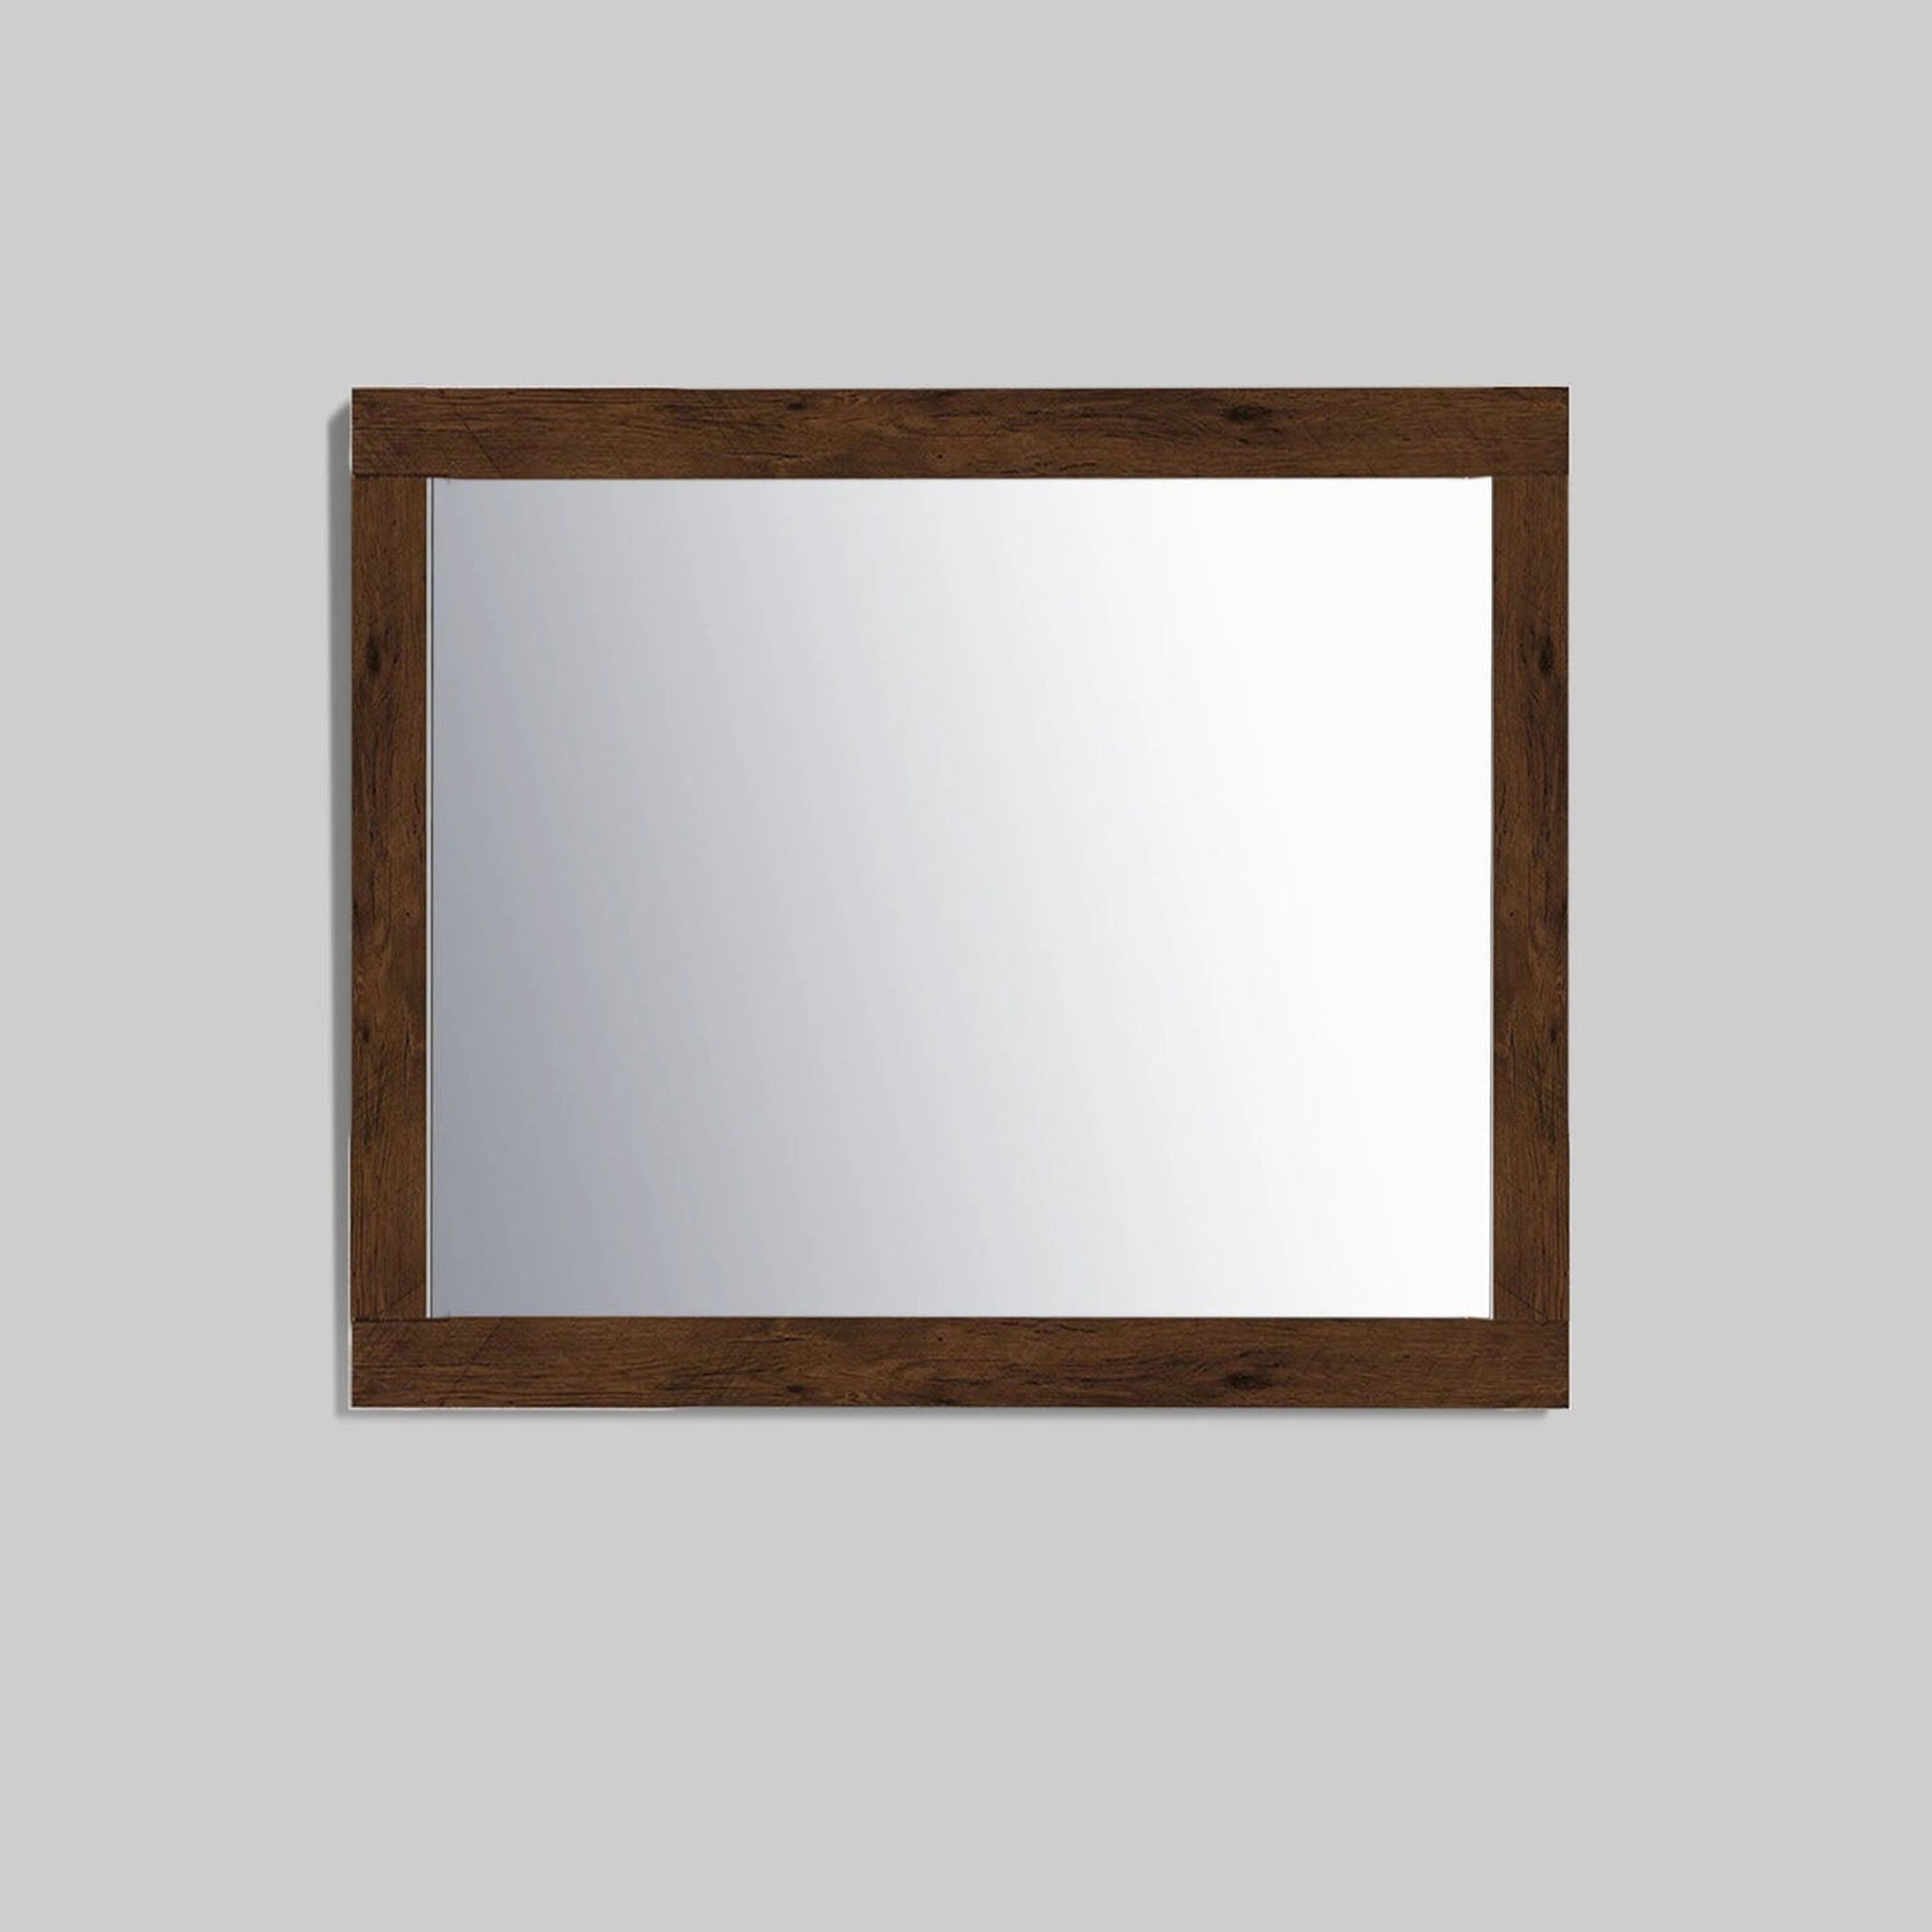 Eviva Sun 24" x 30" Rosewood Framed Bathroom Wall-Mounted Mirror